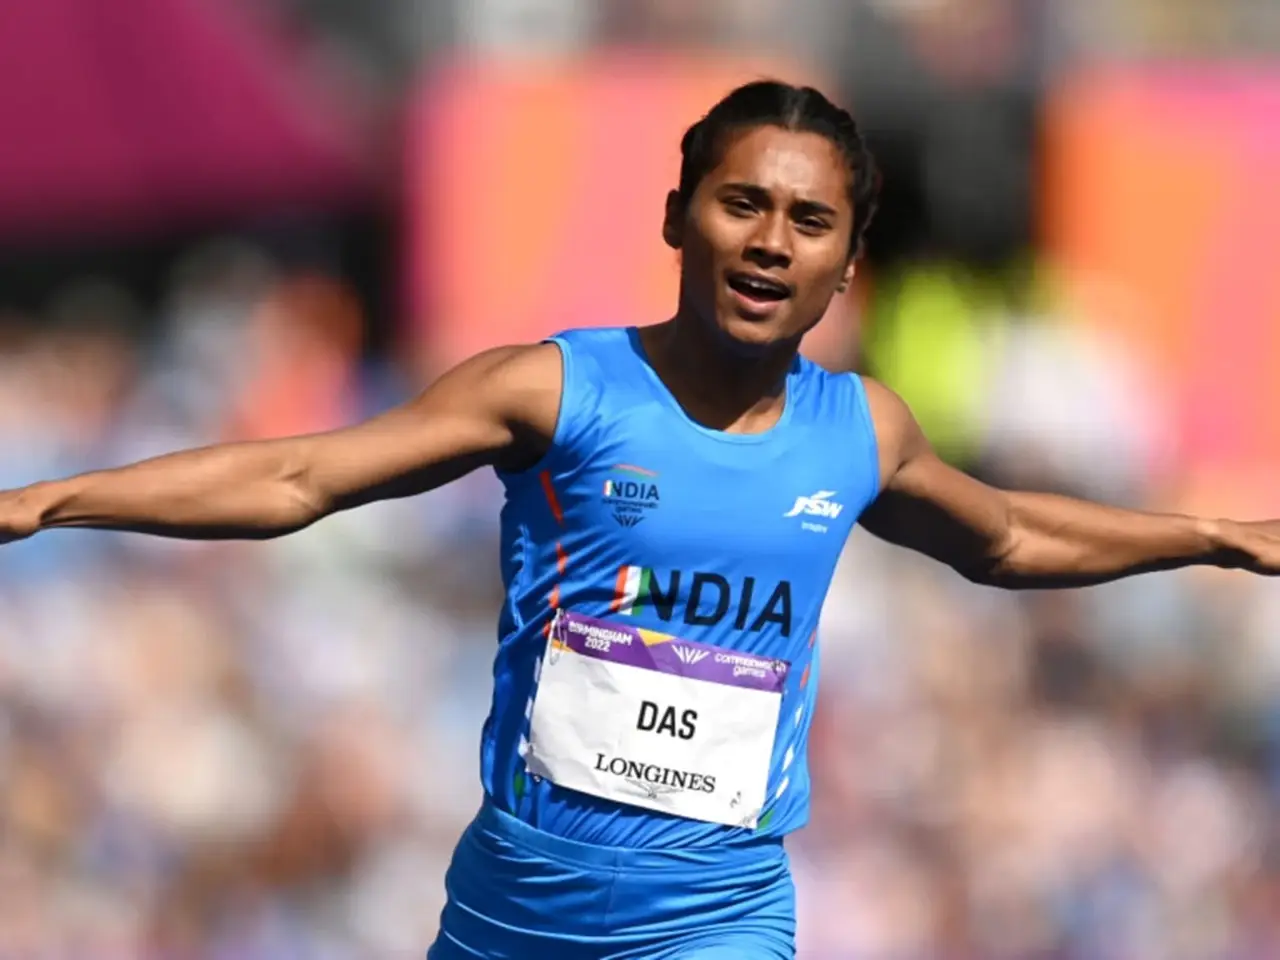 Indian sprint runner Hima Das